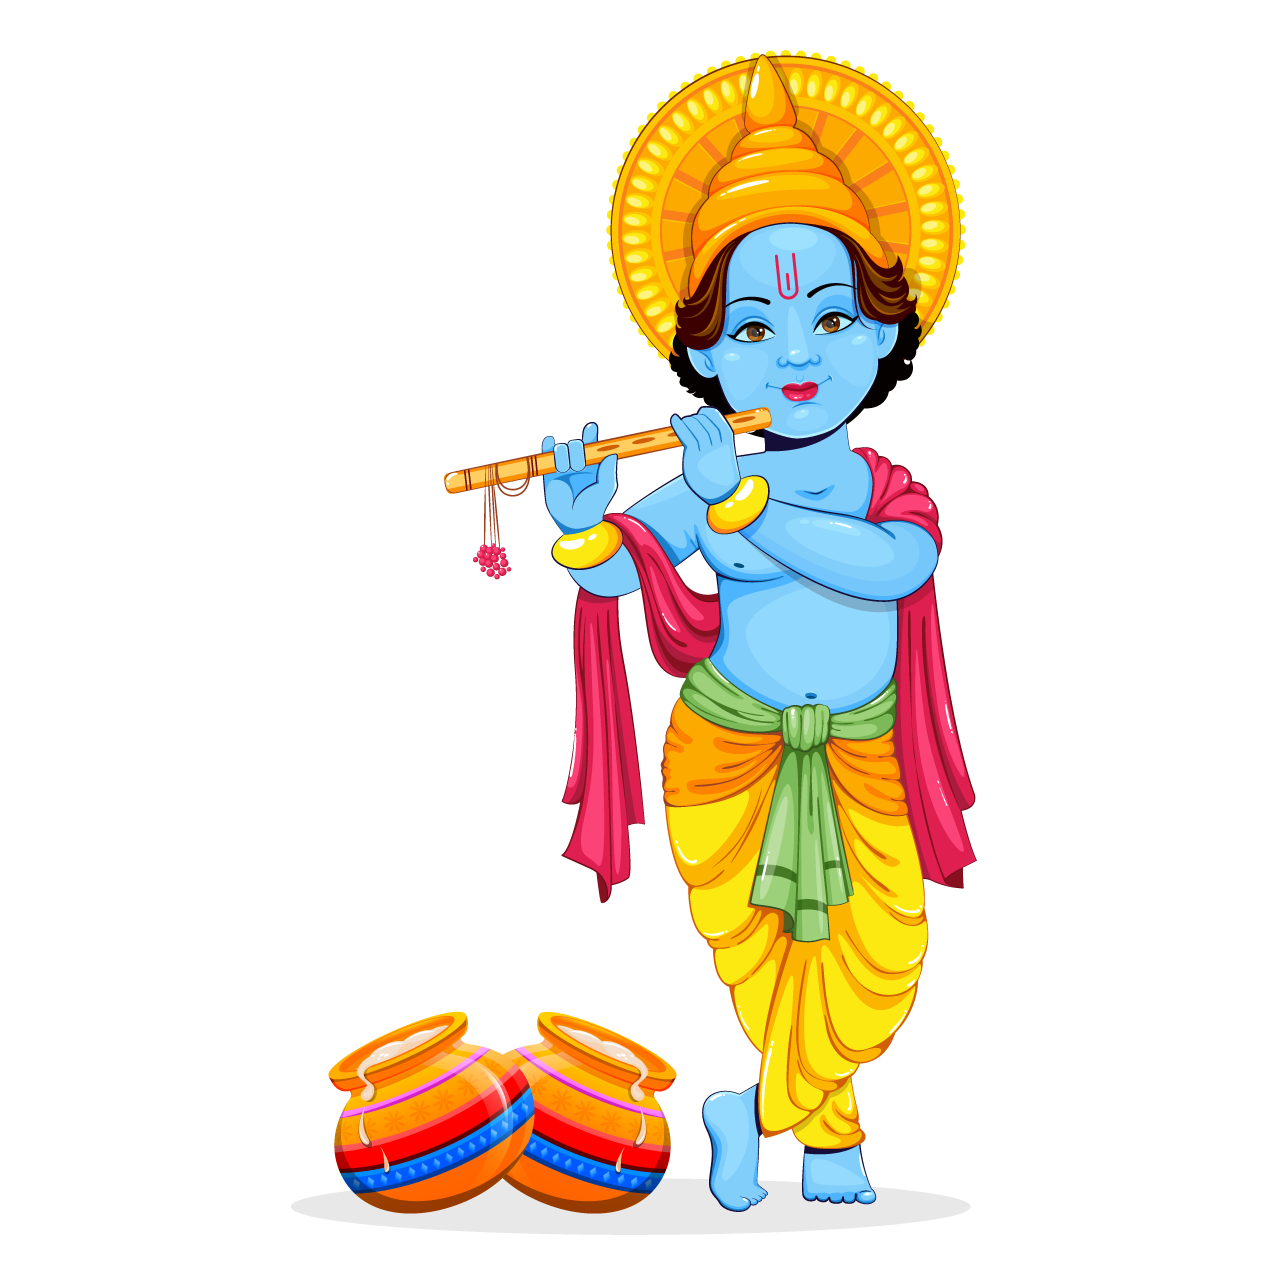 Happy krishna janmashtami paying flute cartoon illustration image